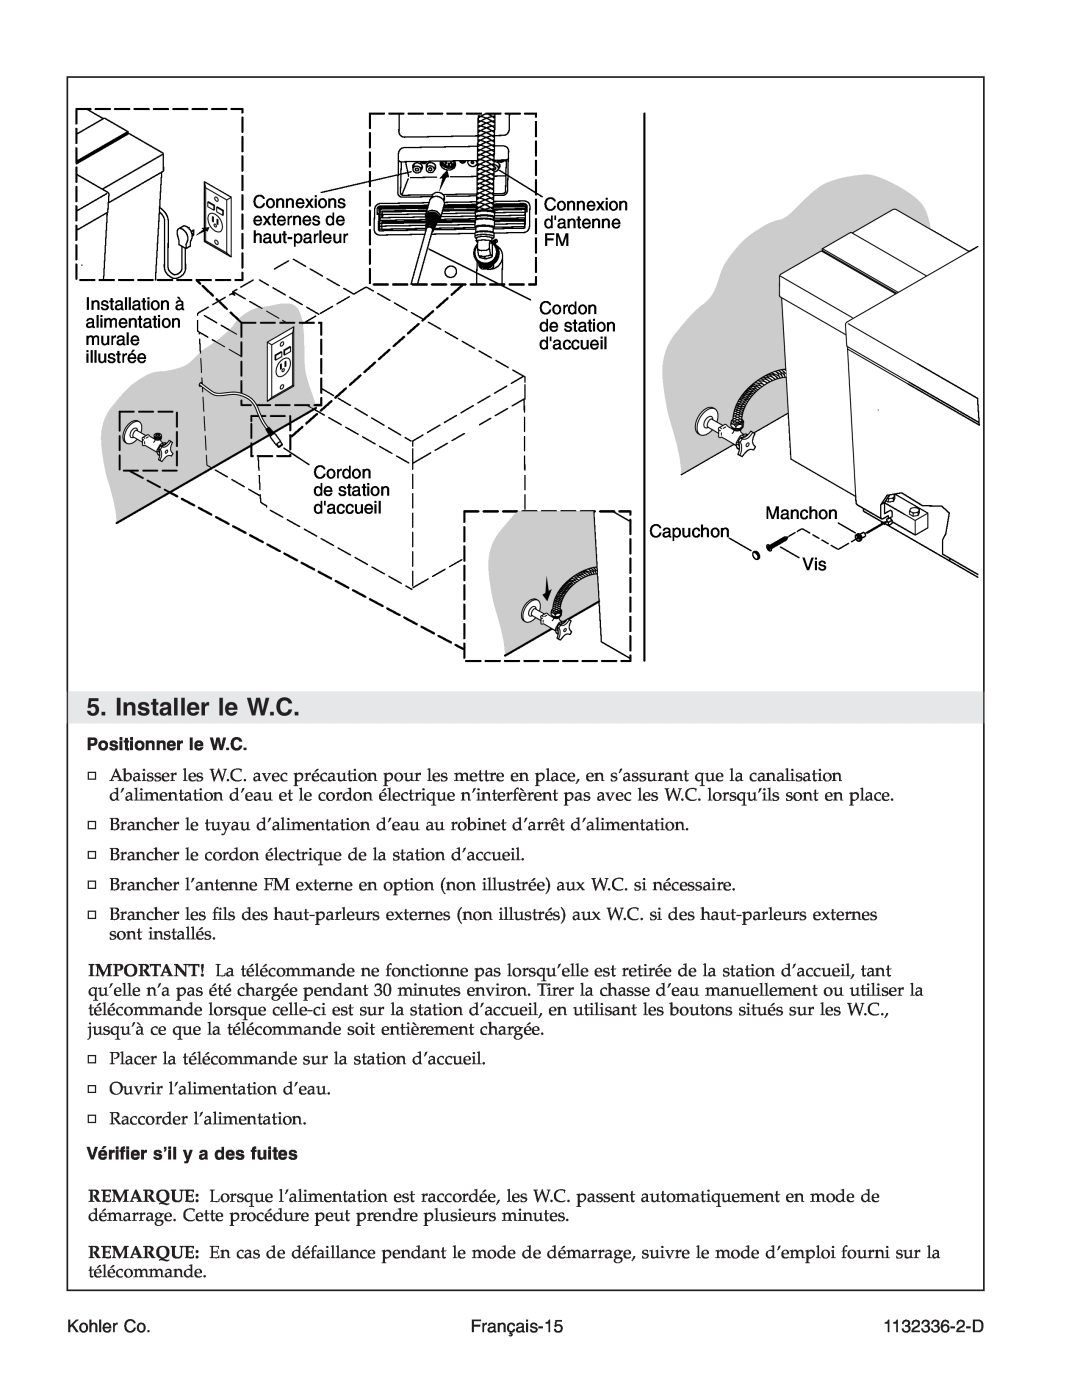 Kohler K-3900 manual Installer le W.C, Positionner le W.C, Vériﬁer s’il y a des fuites, Français-15, Kohler Co, 1132336-2-D 